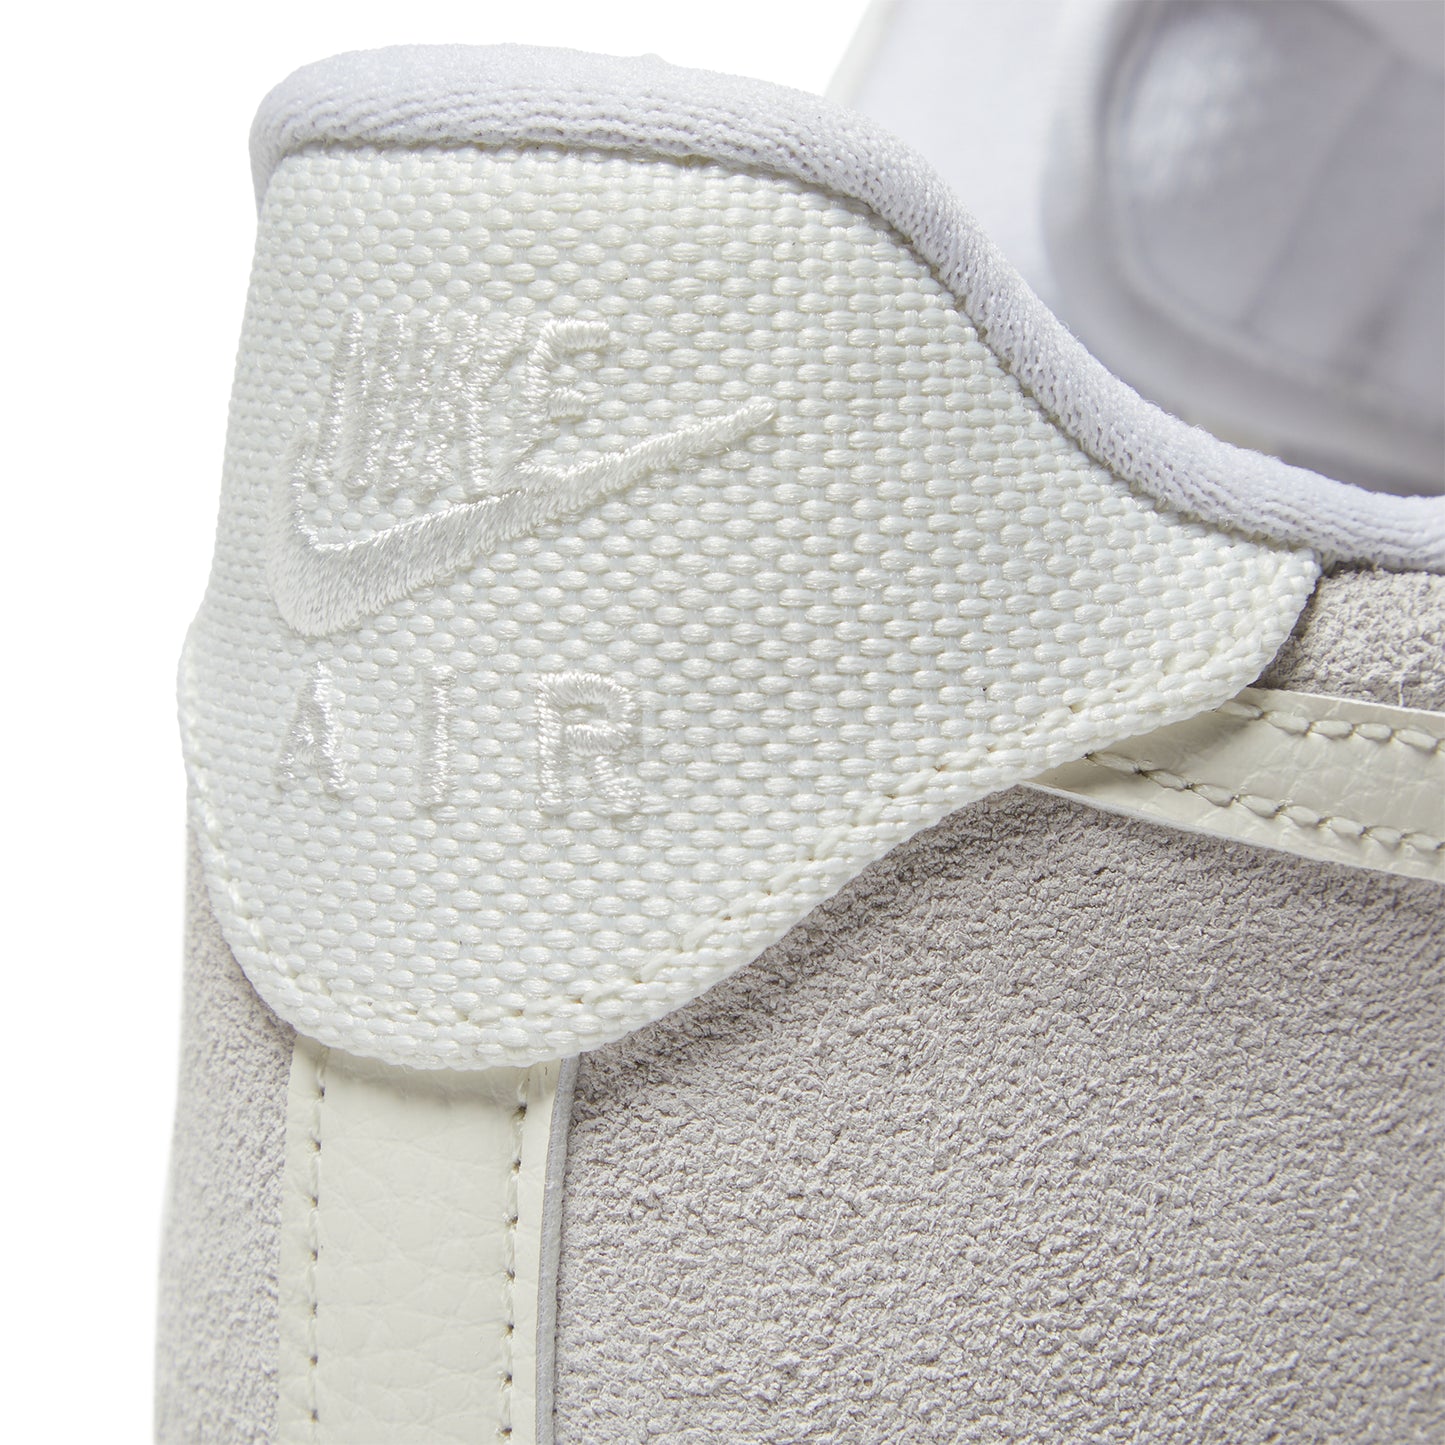 Nike Air Force LV8 (White/Sail/Platinum Tint)